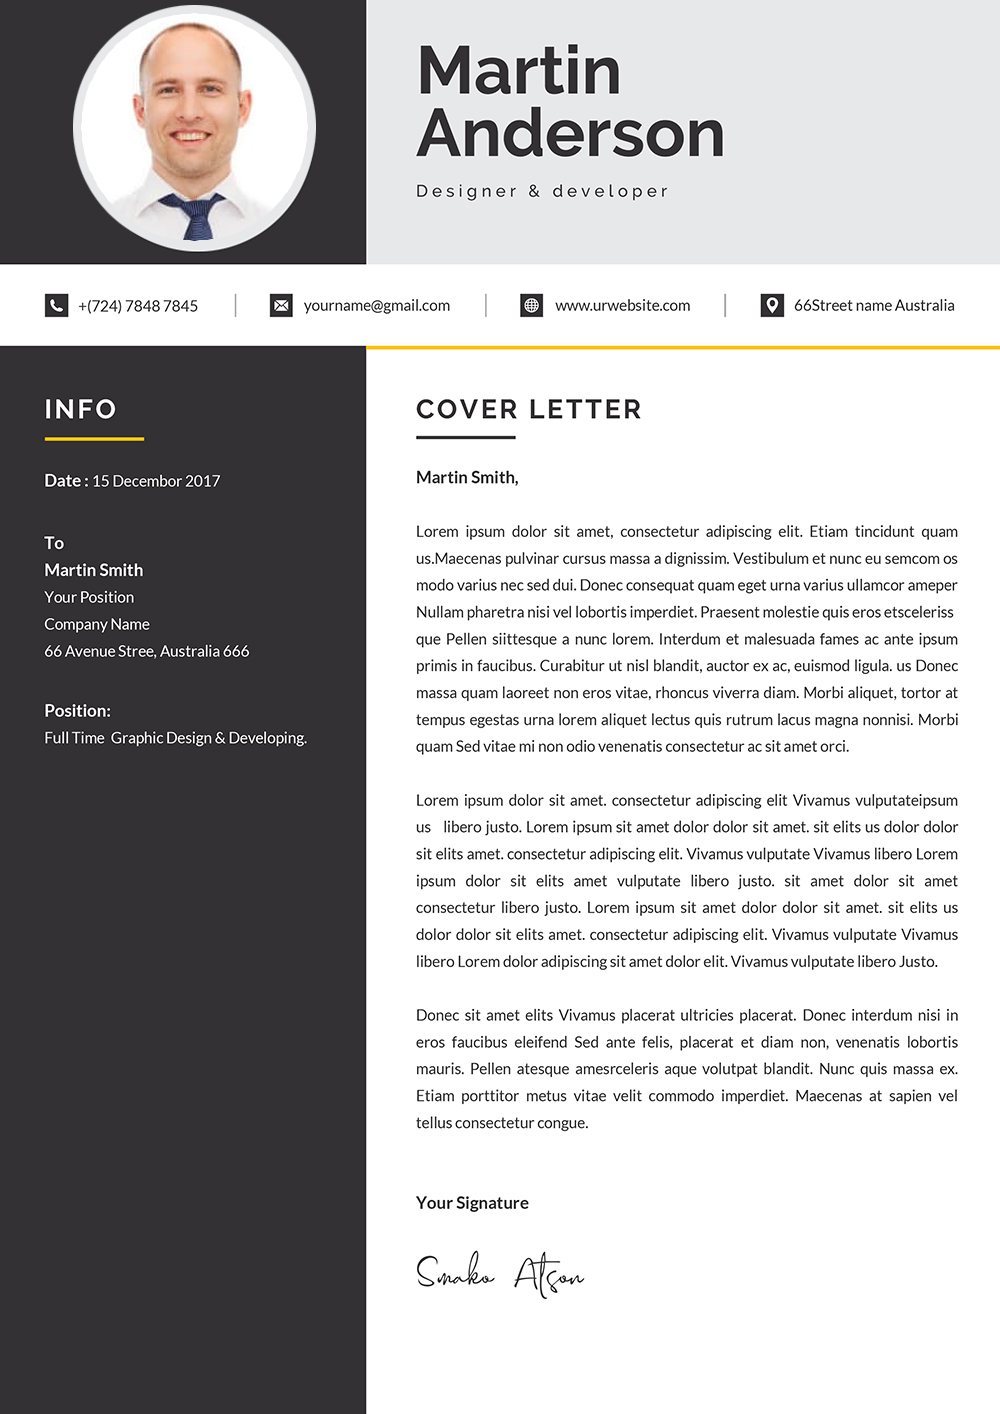 cv-cover-letter-sample-doc-sudansite